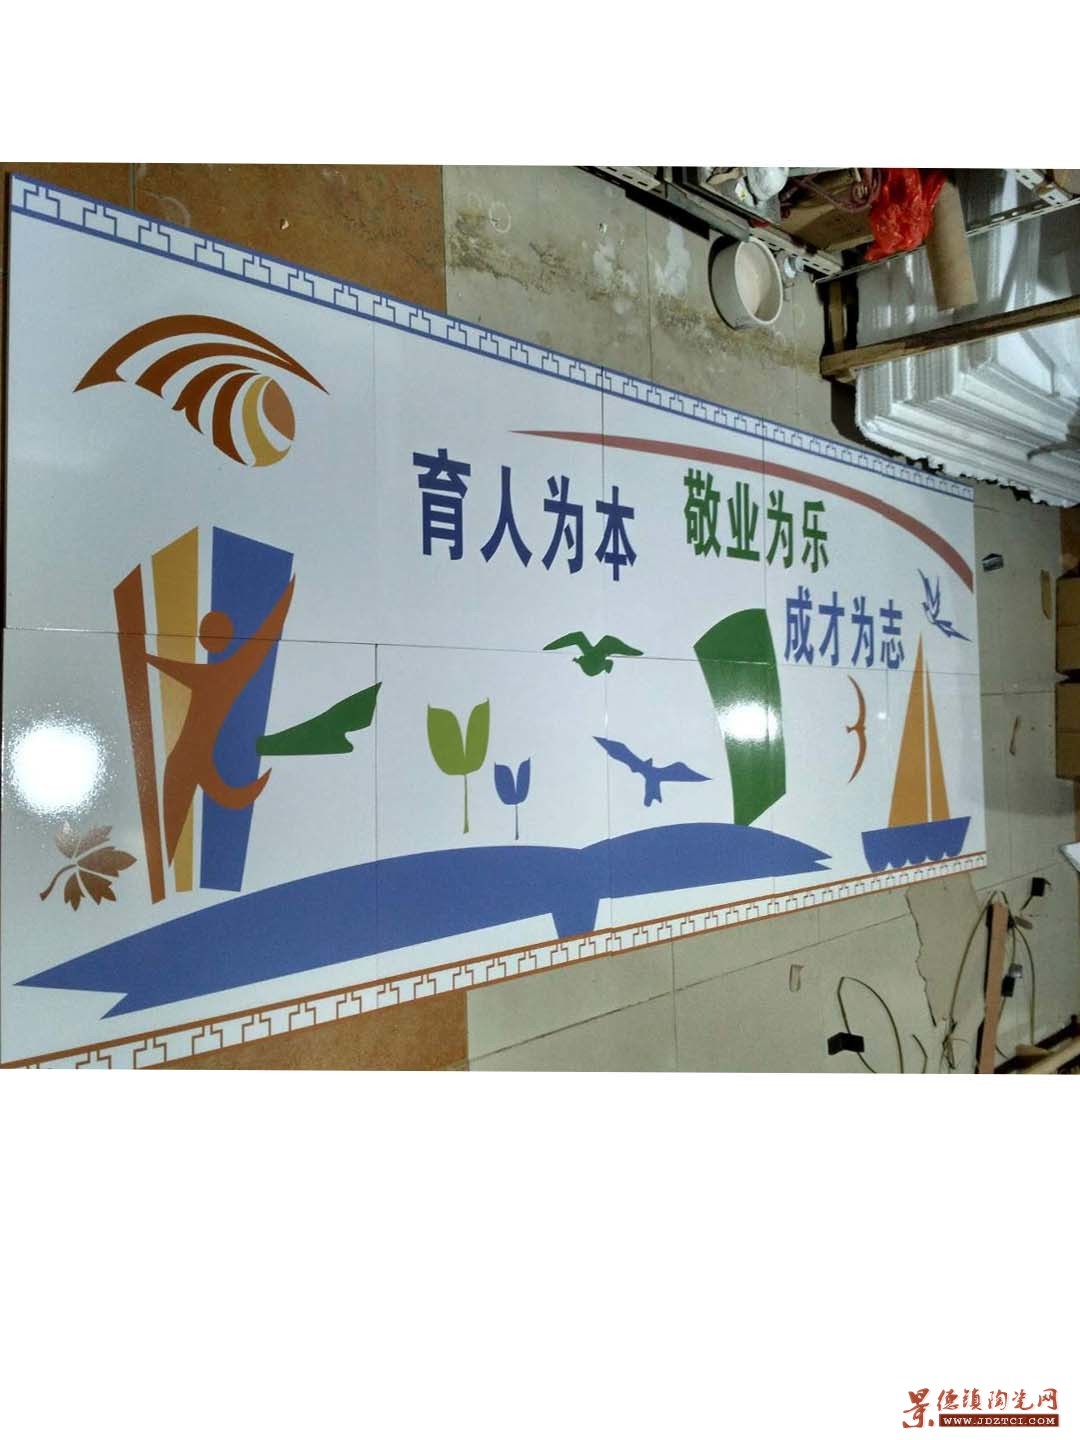 室外陶瓷壁画 教育宣传陶瓷壁画 景德镇陶瓷壁画厂家